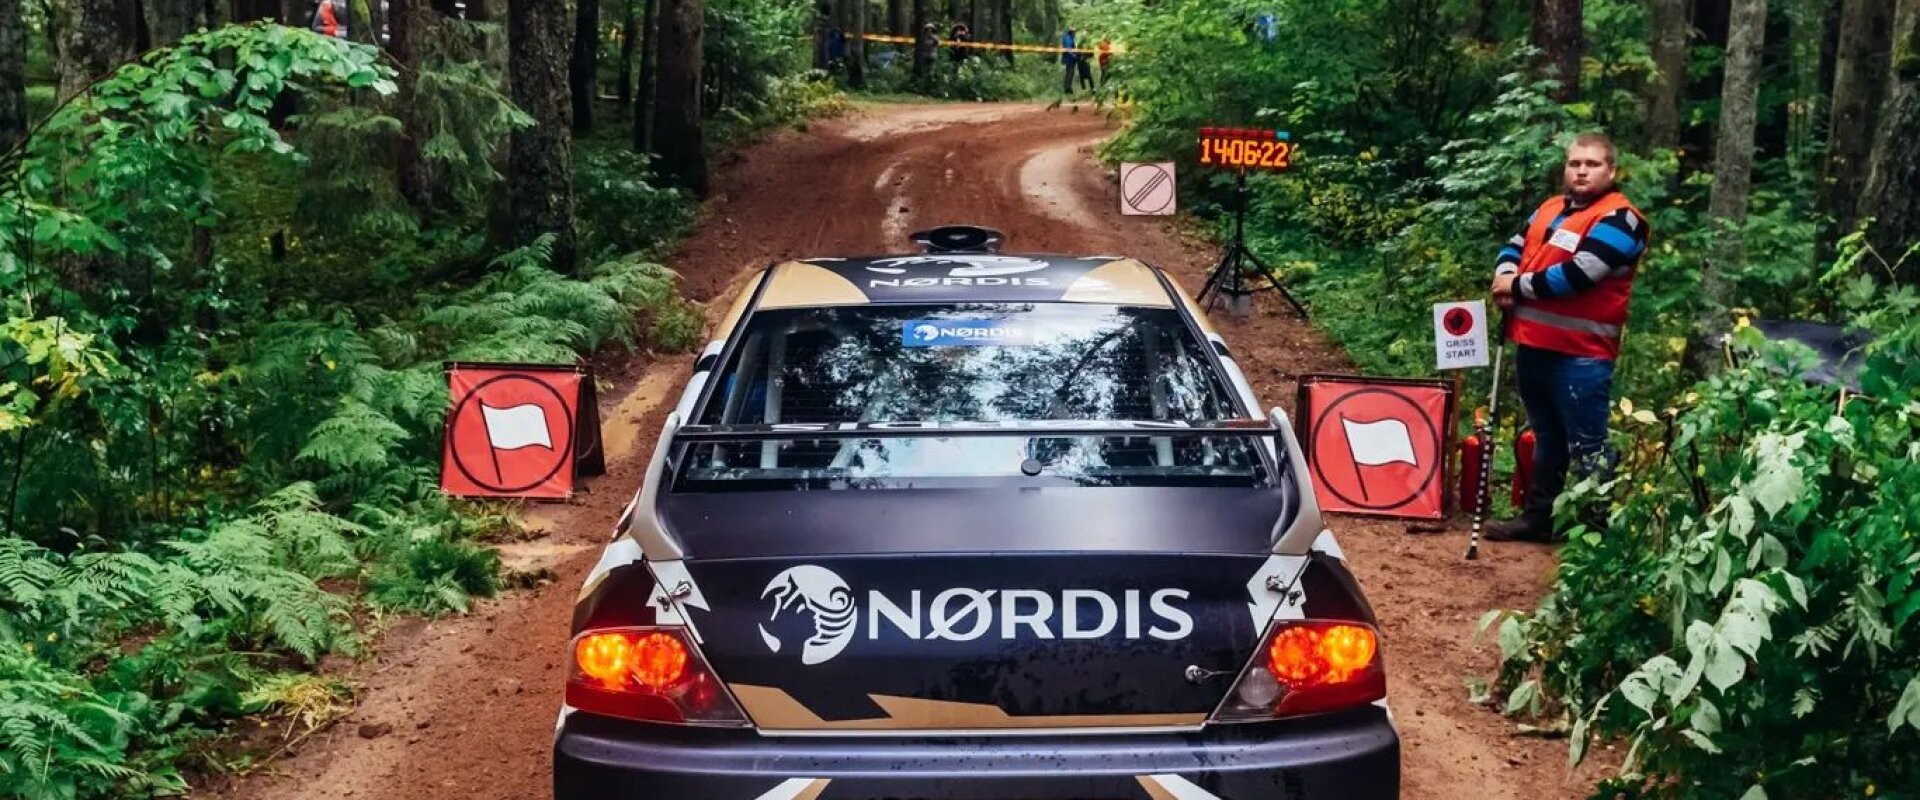 Nørdis racing team #3